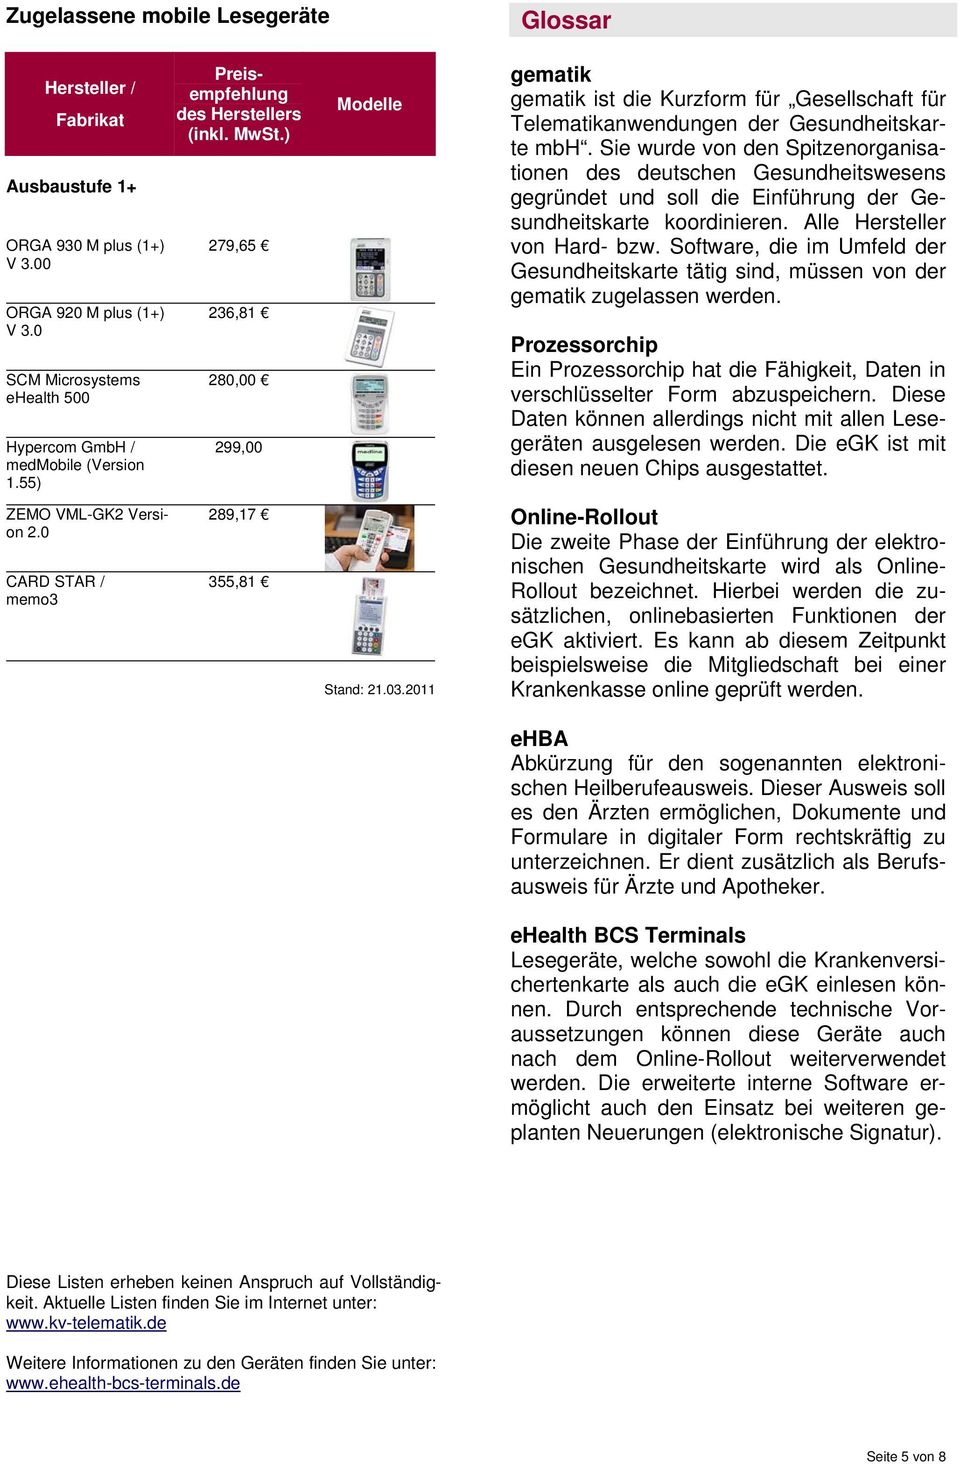 2011 gematik gematik ist die Kurzform für Gesellschaft für Telematikanwendungen der Gesundheitskarte mbh.